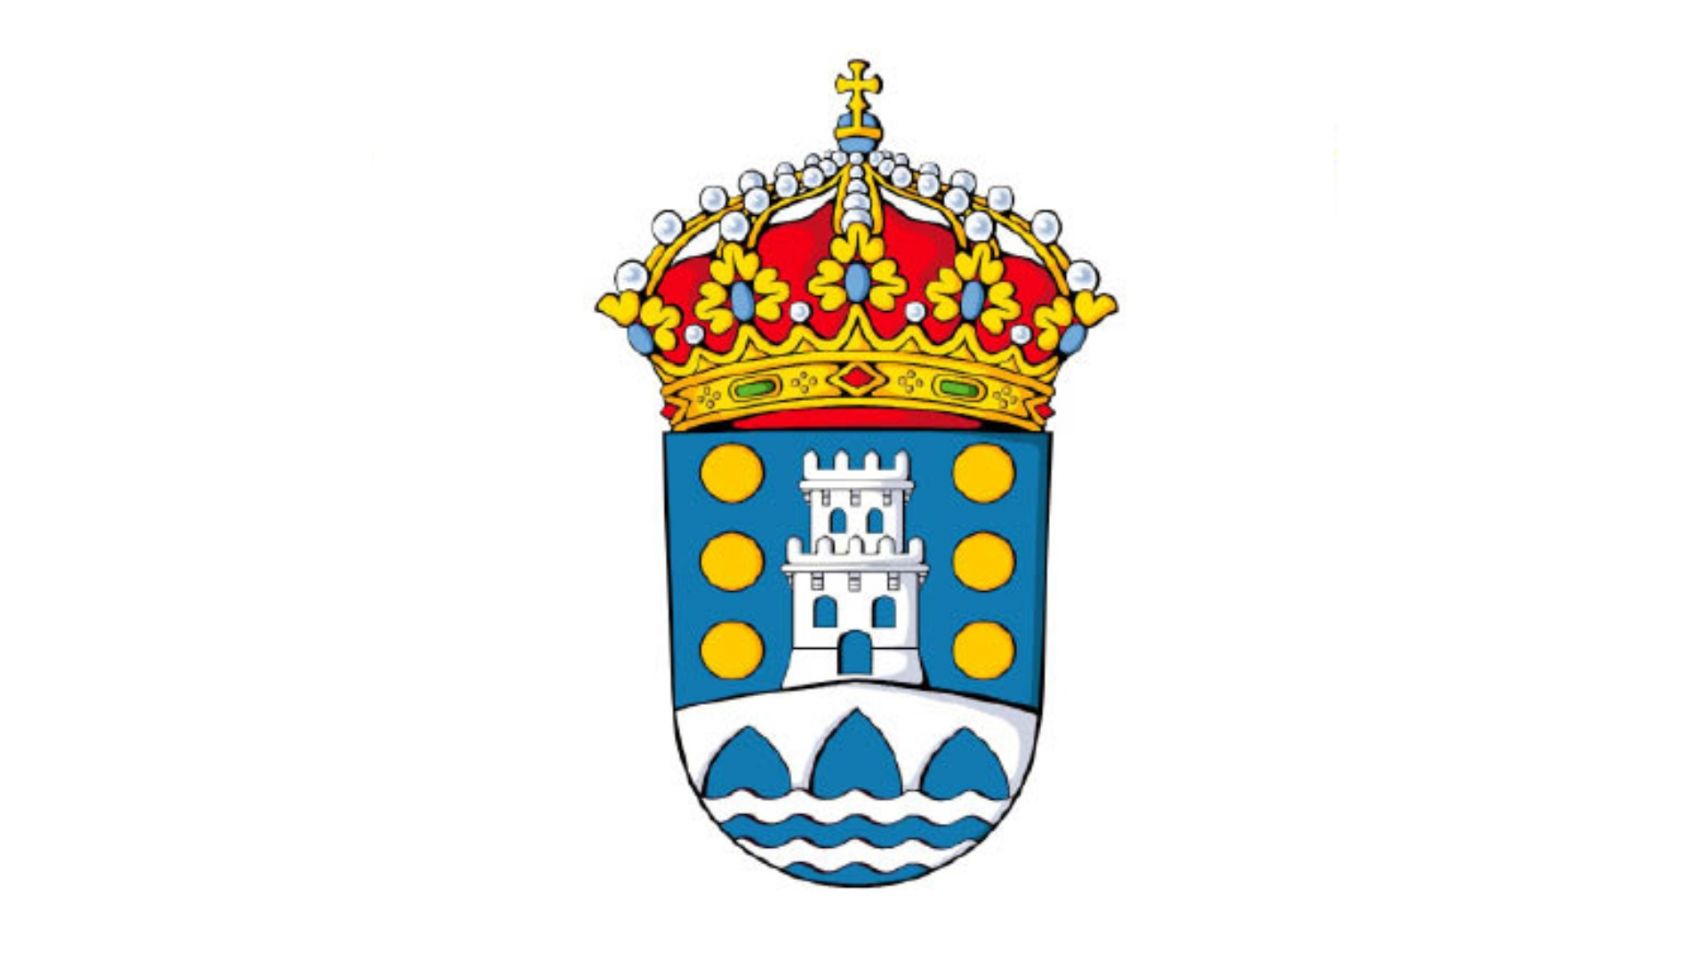 El escudo del ayuntamiento de Betanzos.